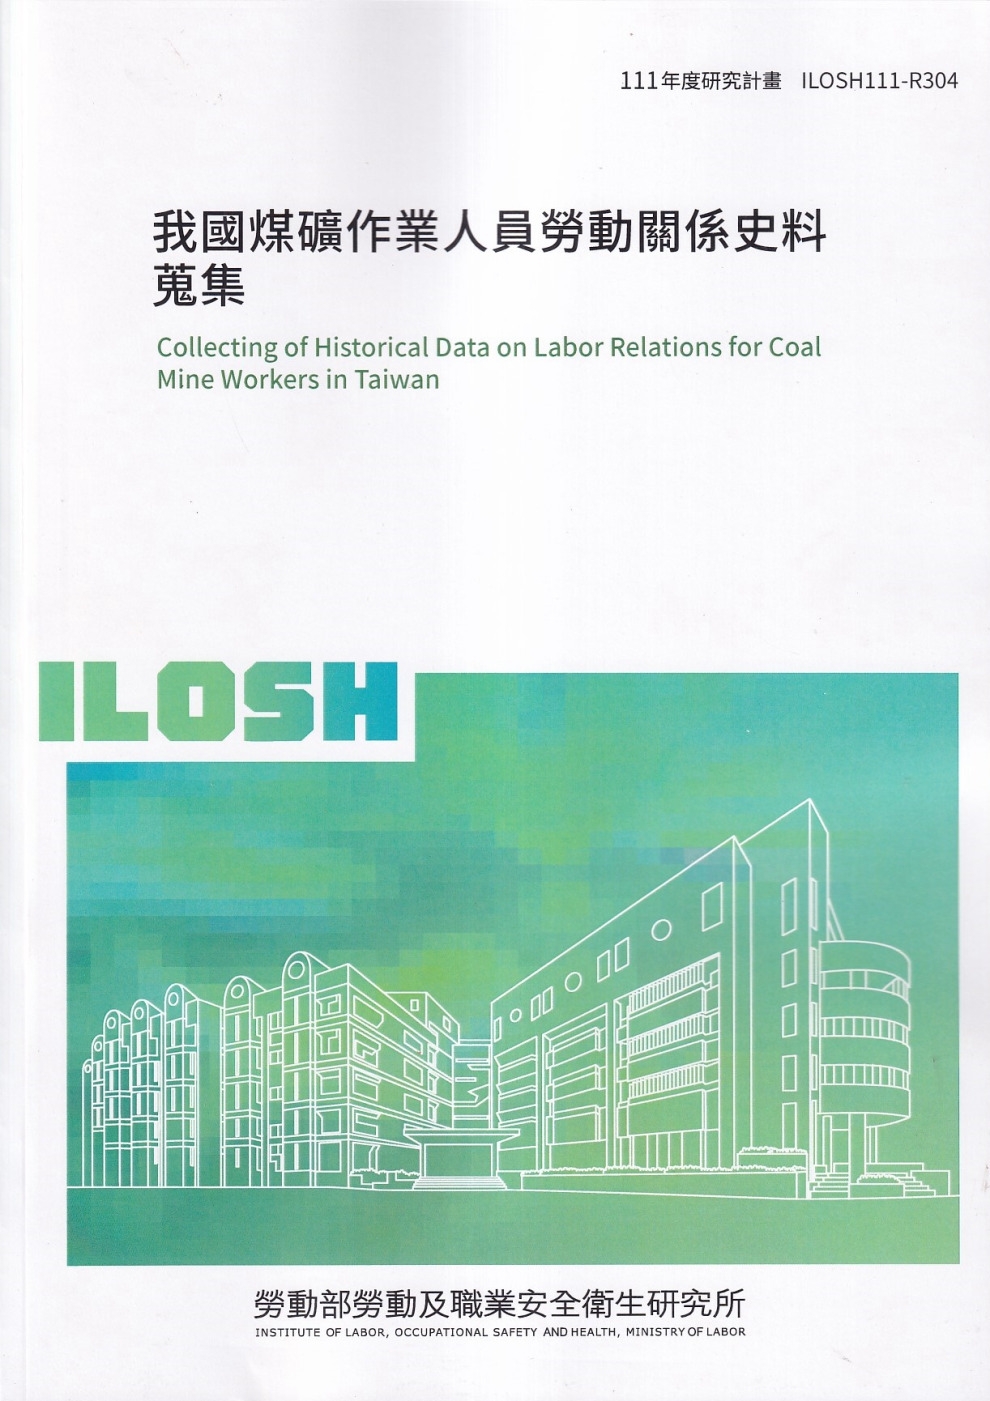 我國煤礦作業人員勞動關係史料蒐集ILOSH111-R304